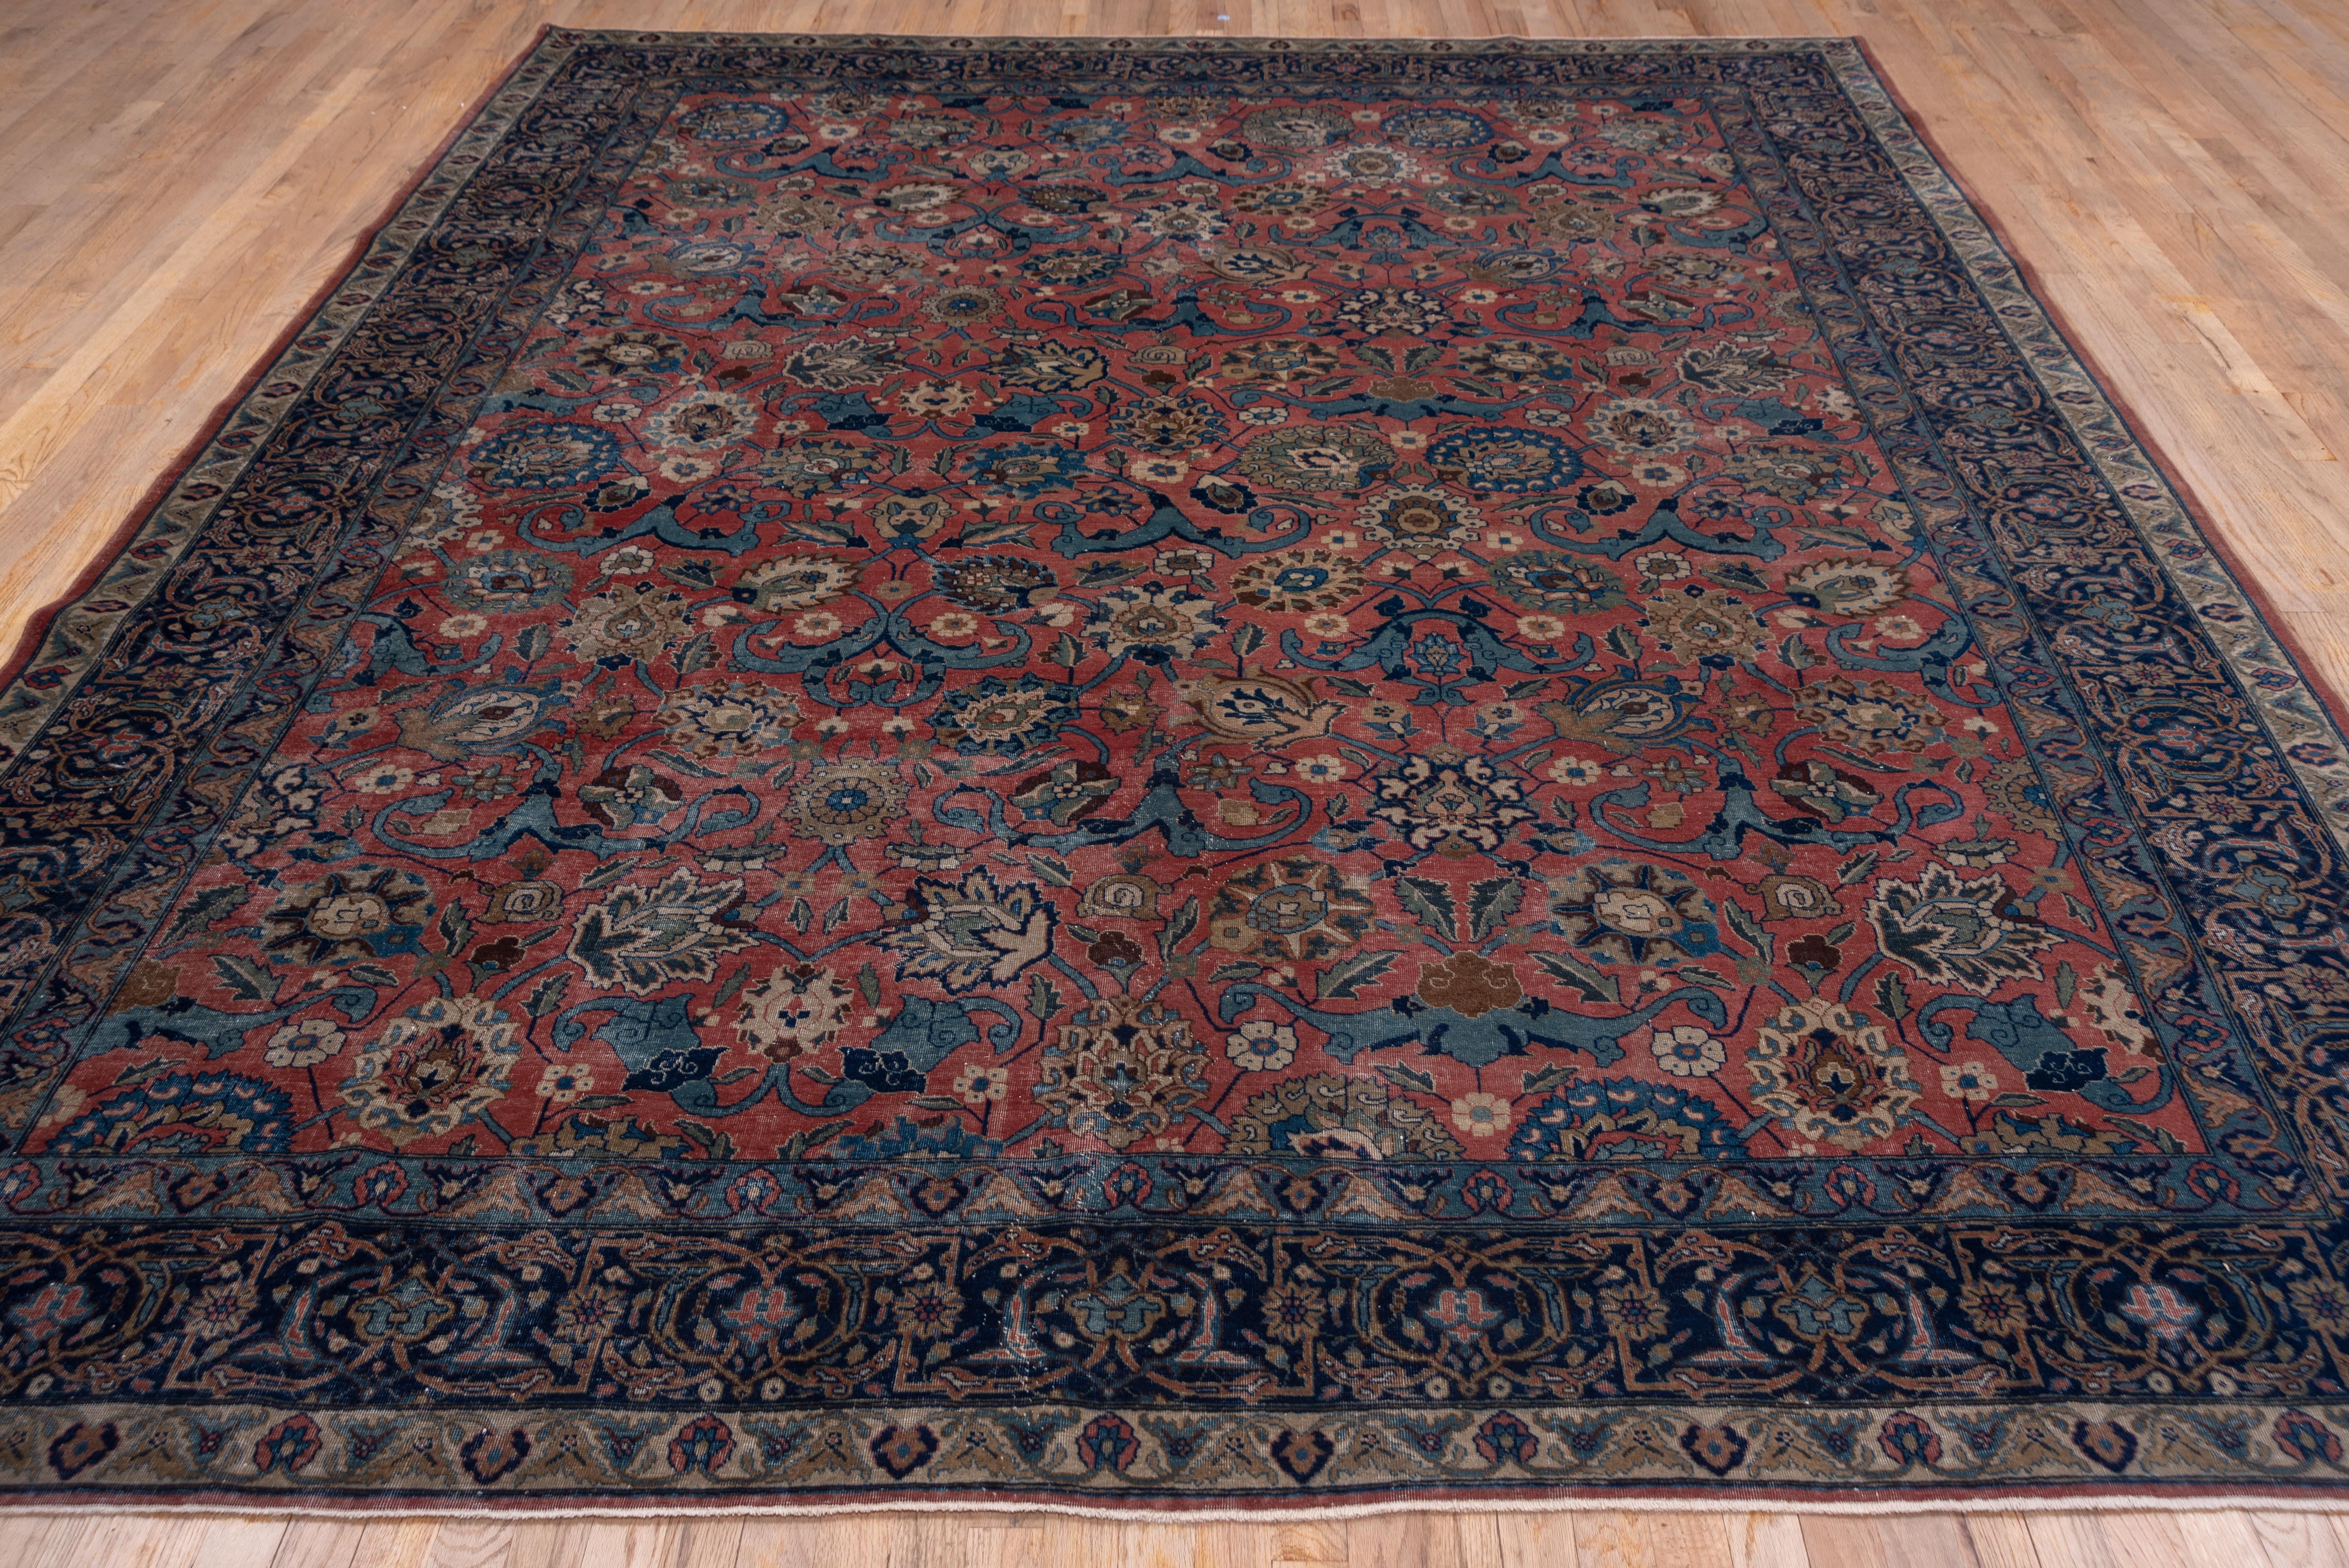 Hand-Knotted Vase Carpet Pattern Antique Tabriz Rug